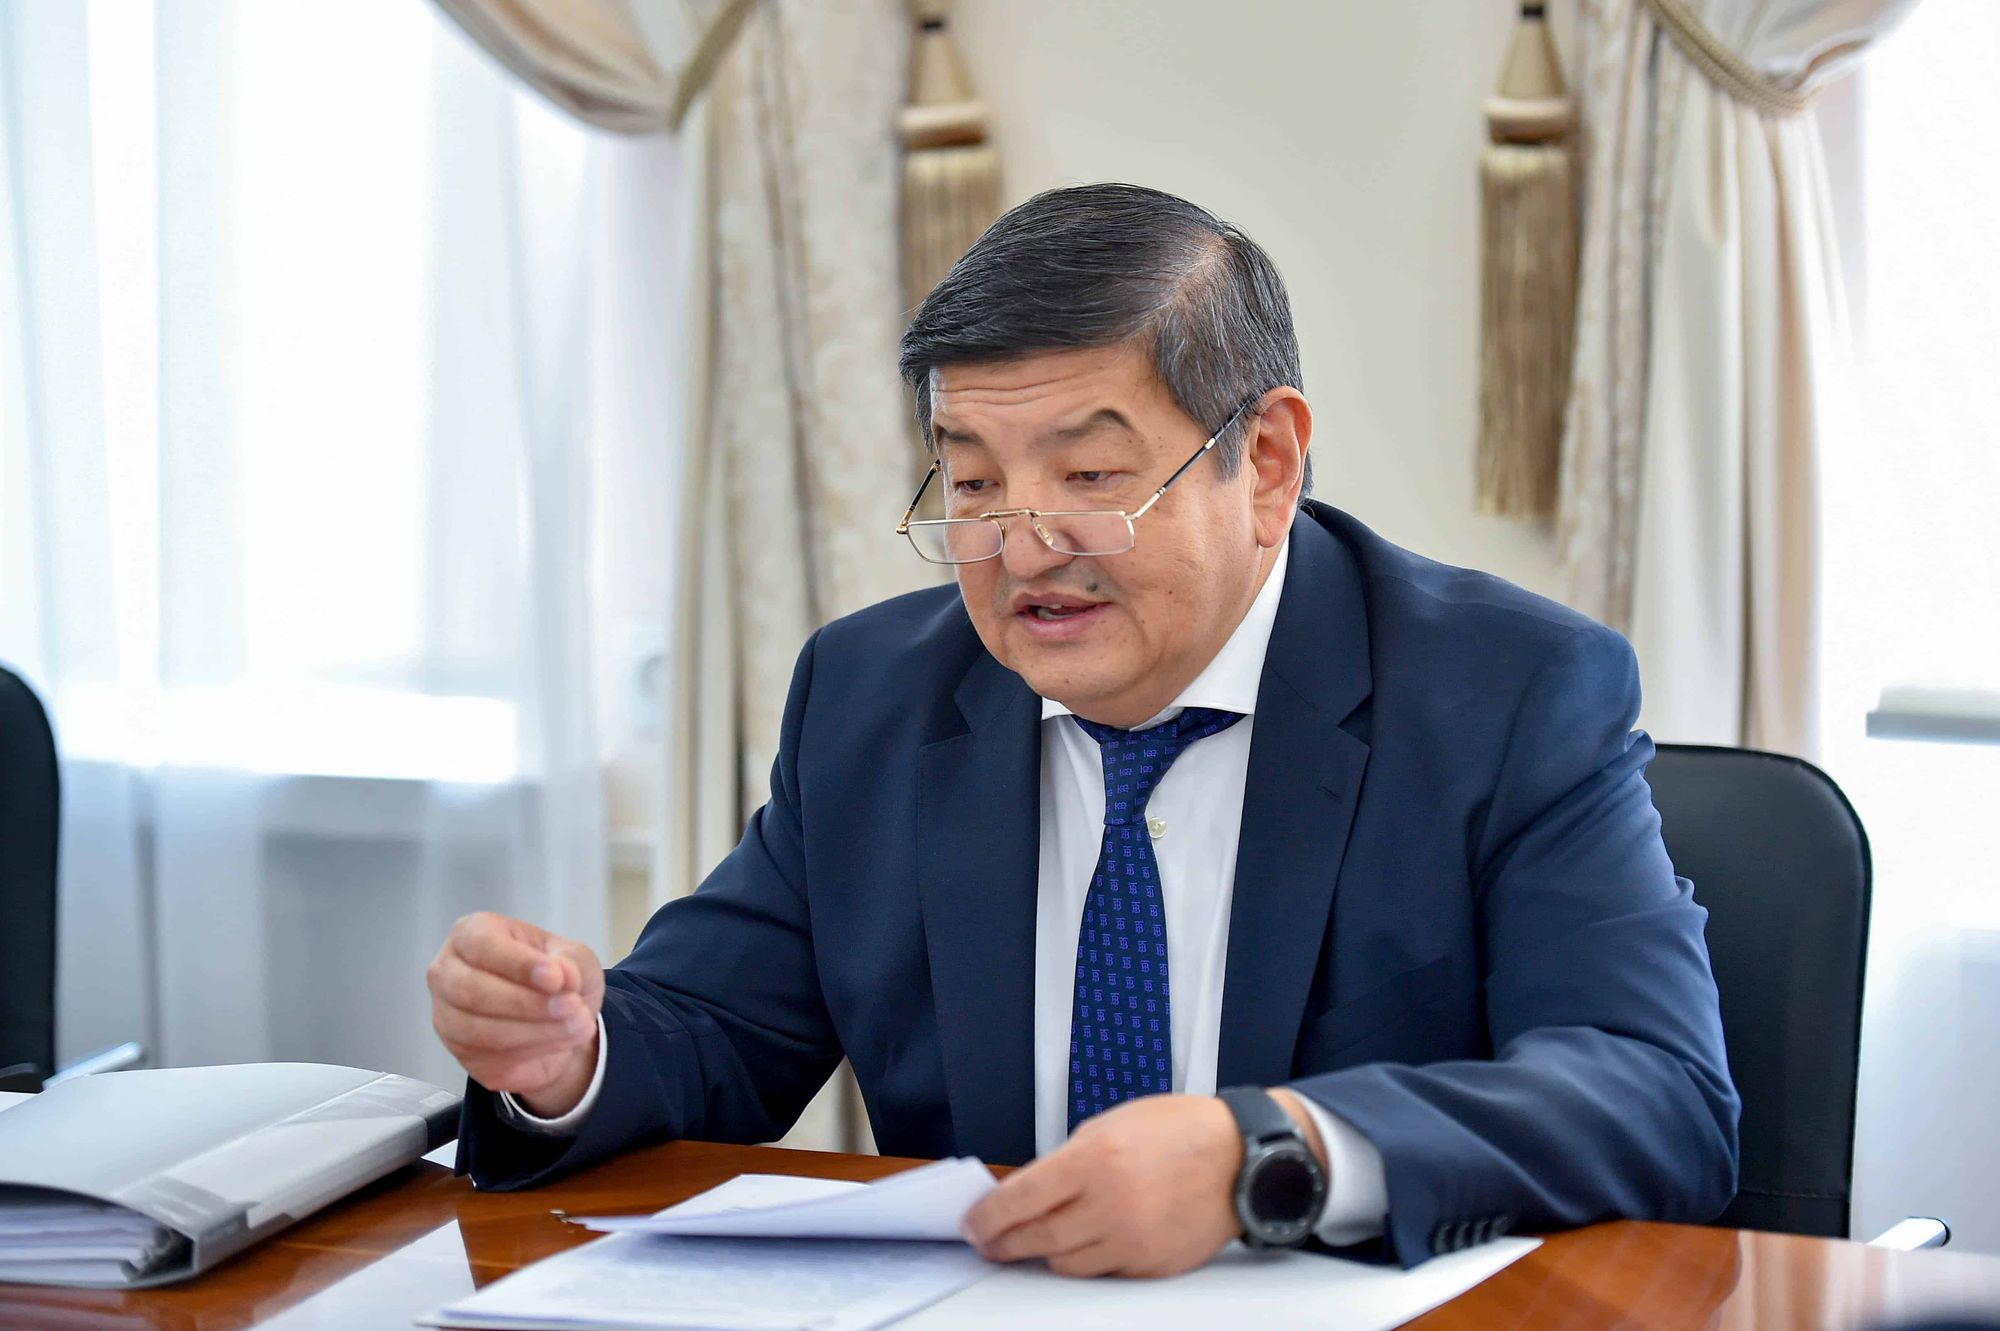 Акылбек Жапаров: Кыргызстан не будет досрочно погашать внешний долг — иначе проценты будут выше